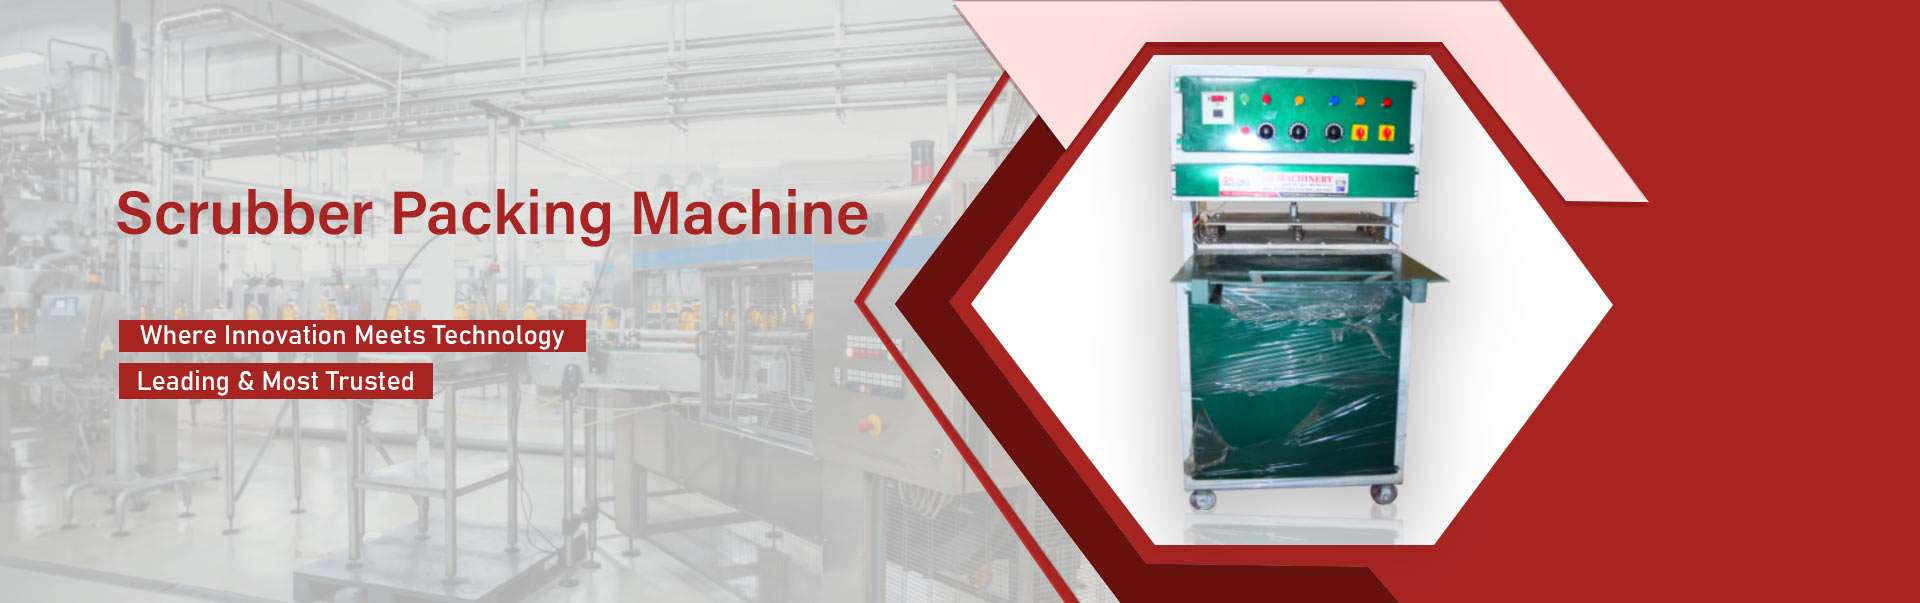  Scrubber Packing Machine Manufacturers Manufacturers in Tamil Nadu